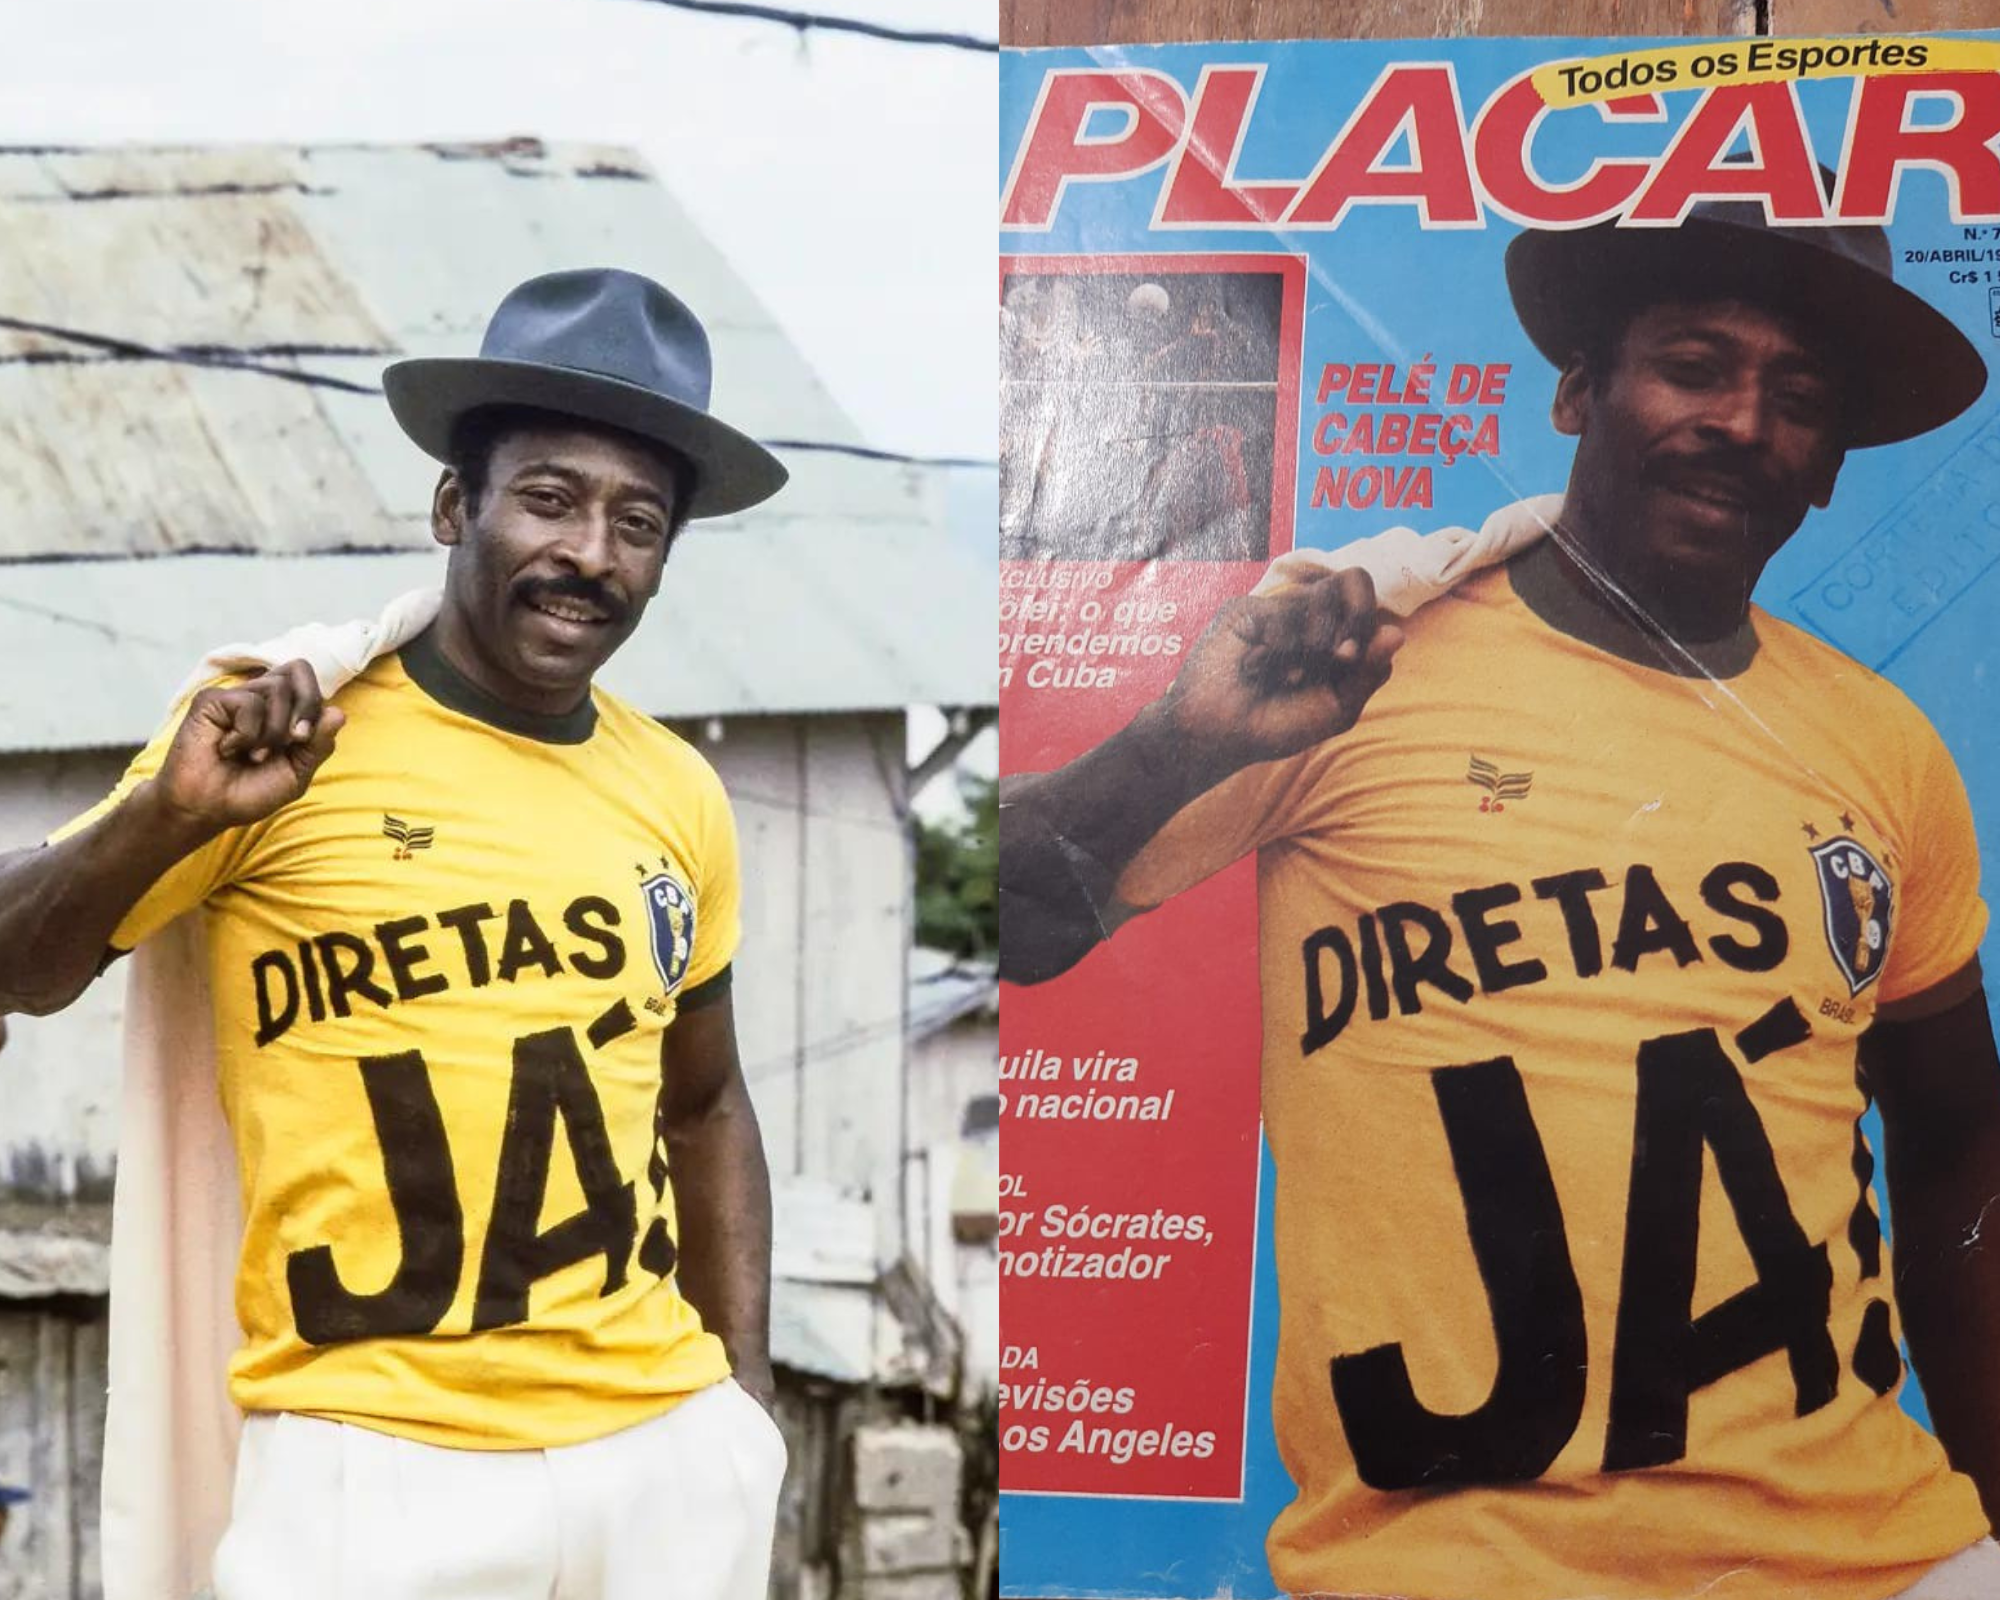 Viraliza foto de Pelé engajado na campanha “Diretas Já”